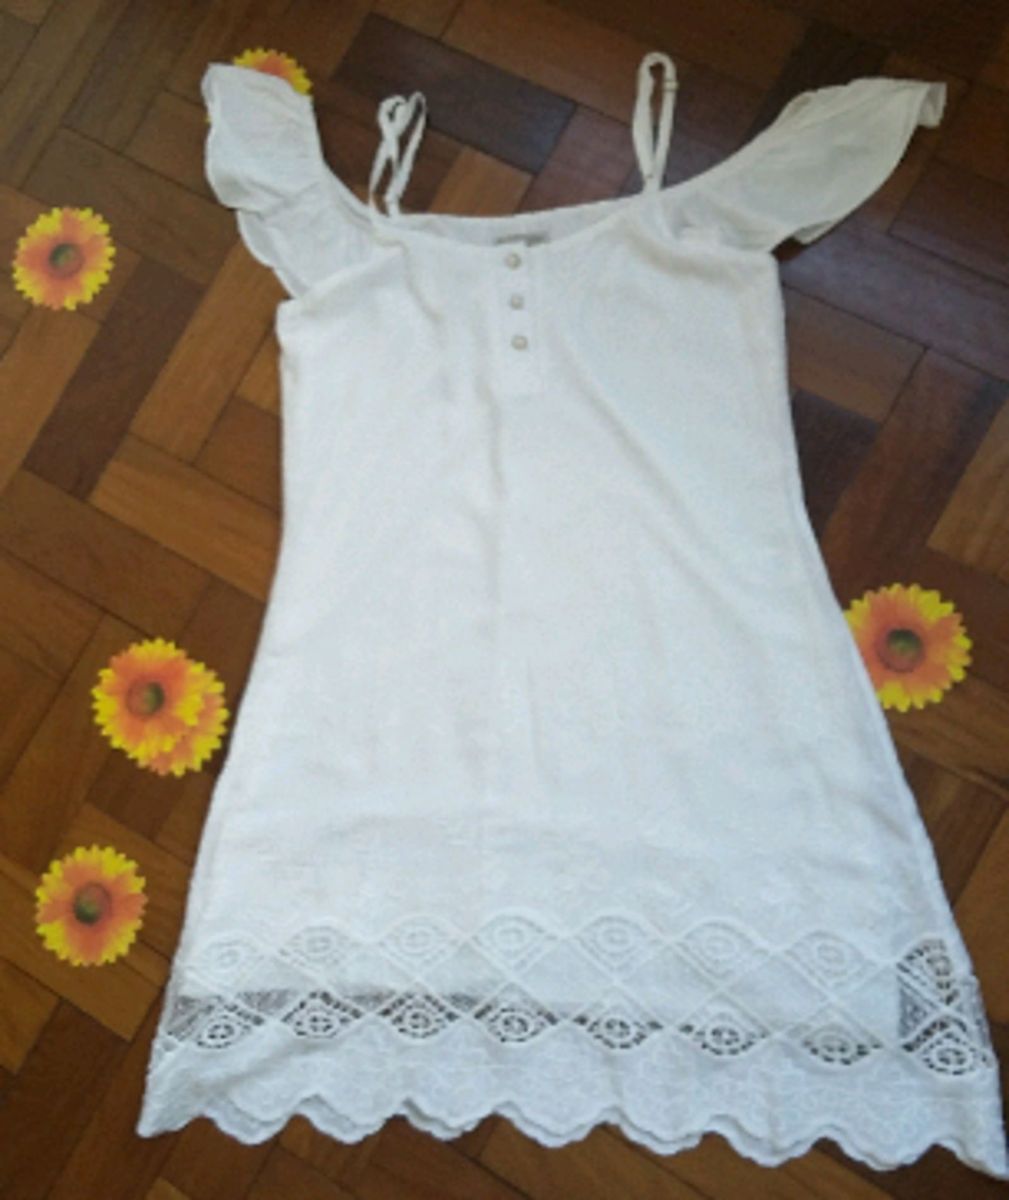 vestido branco luau